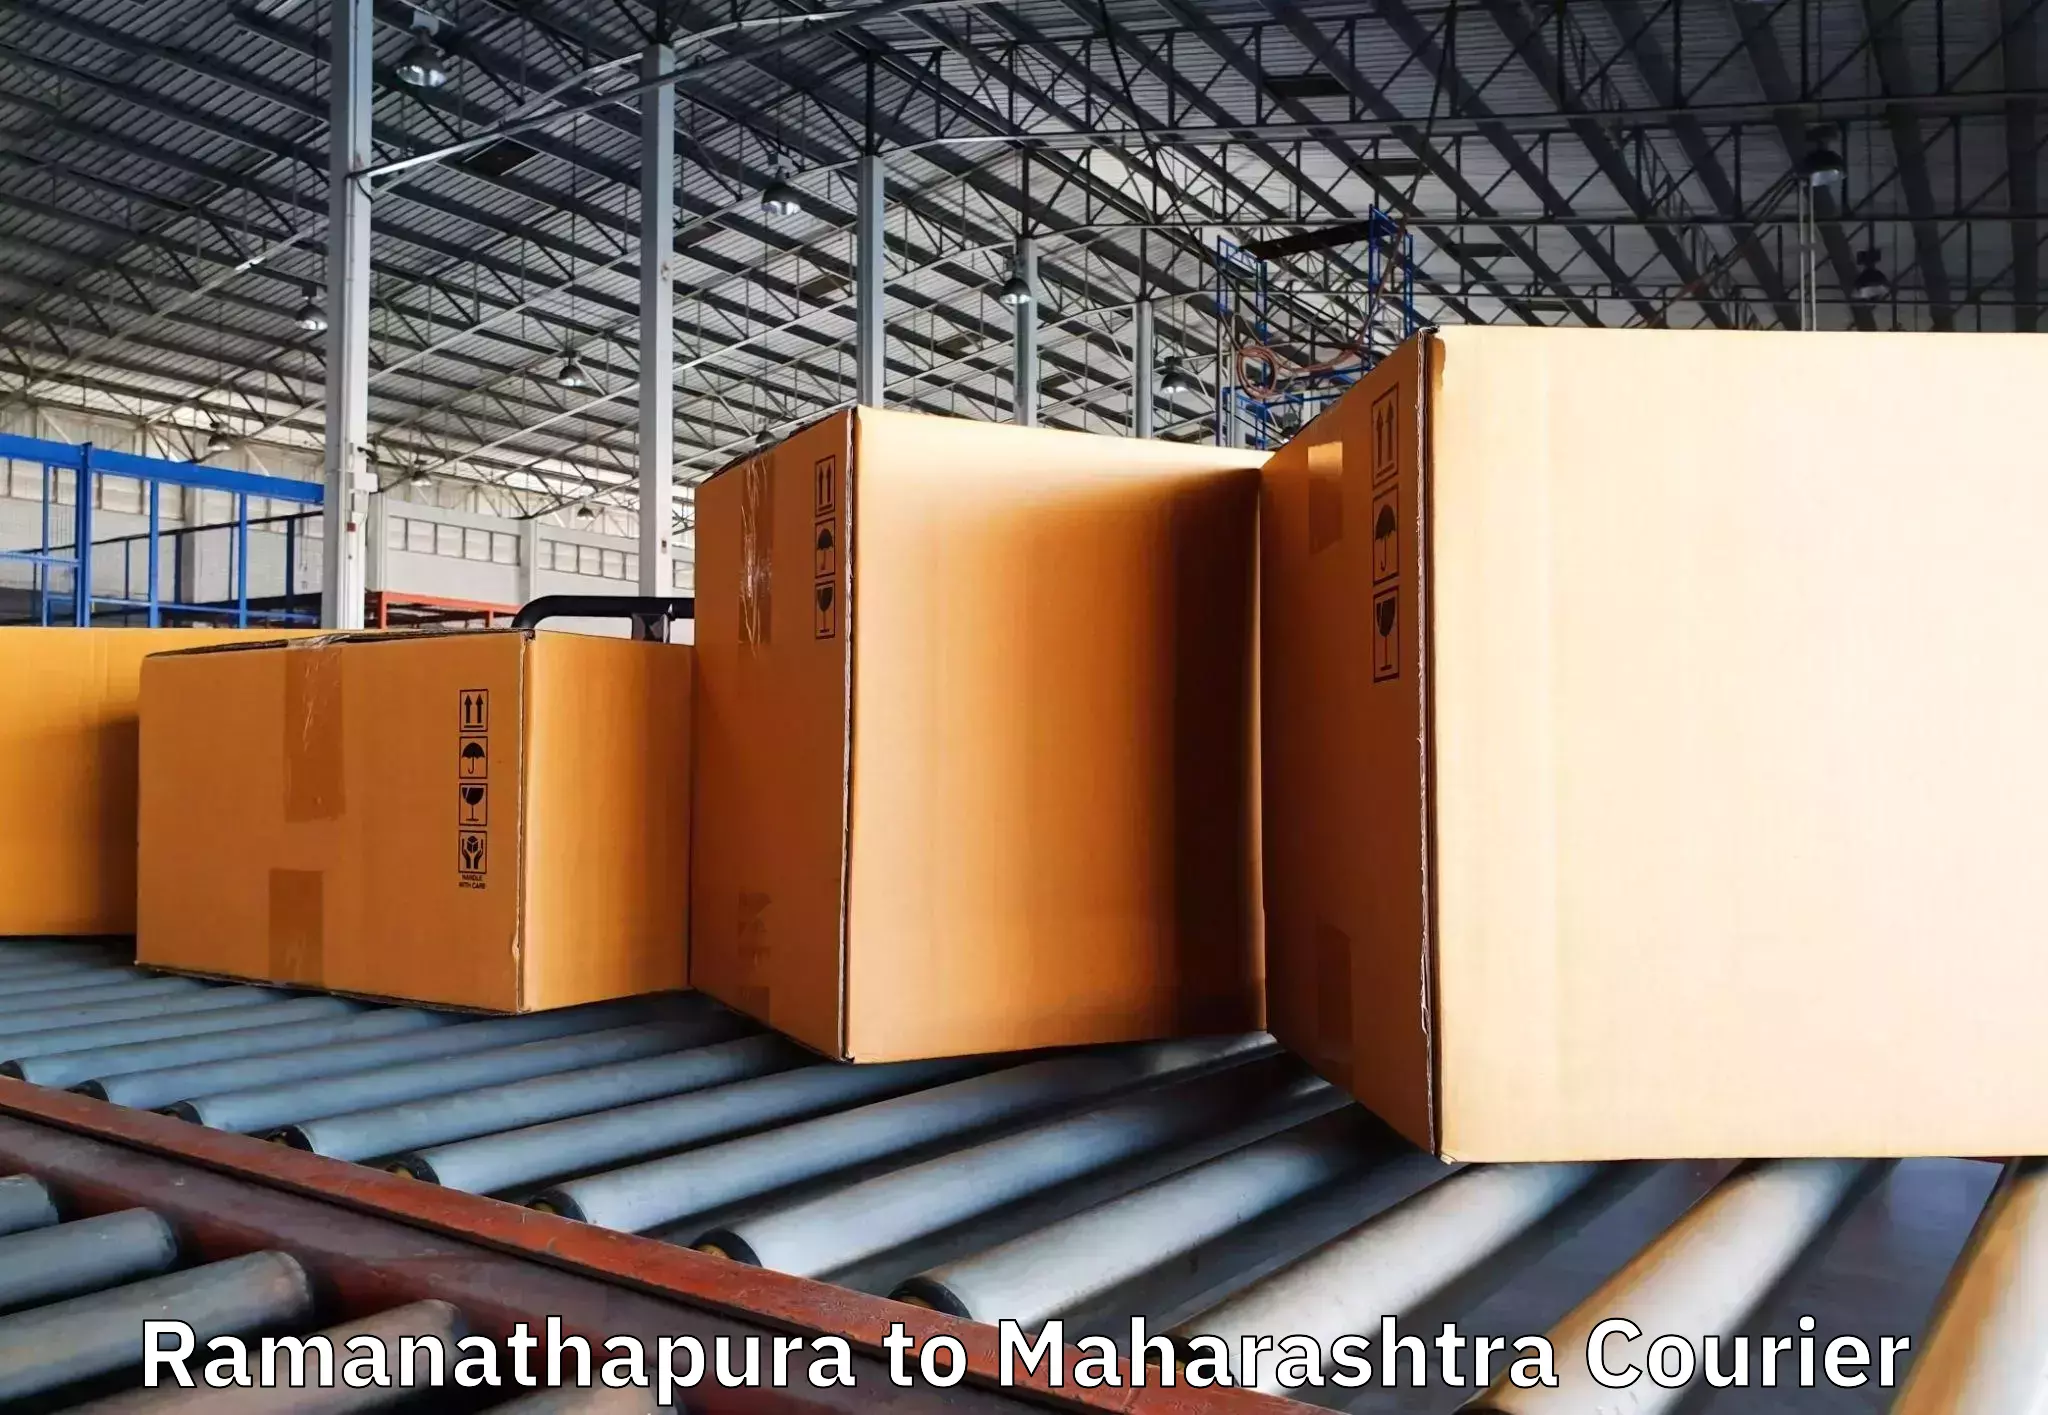 Furniture moving experts Ramanathapura to Mahabaleshwar